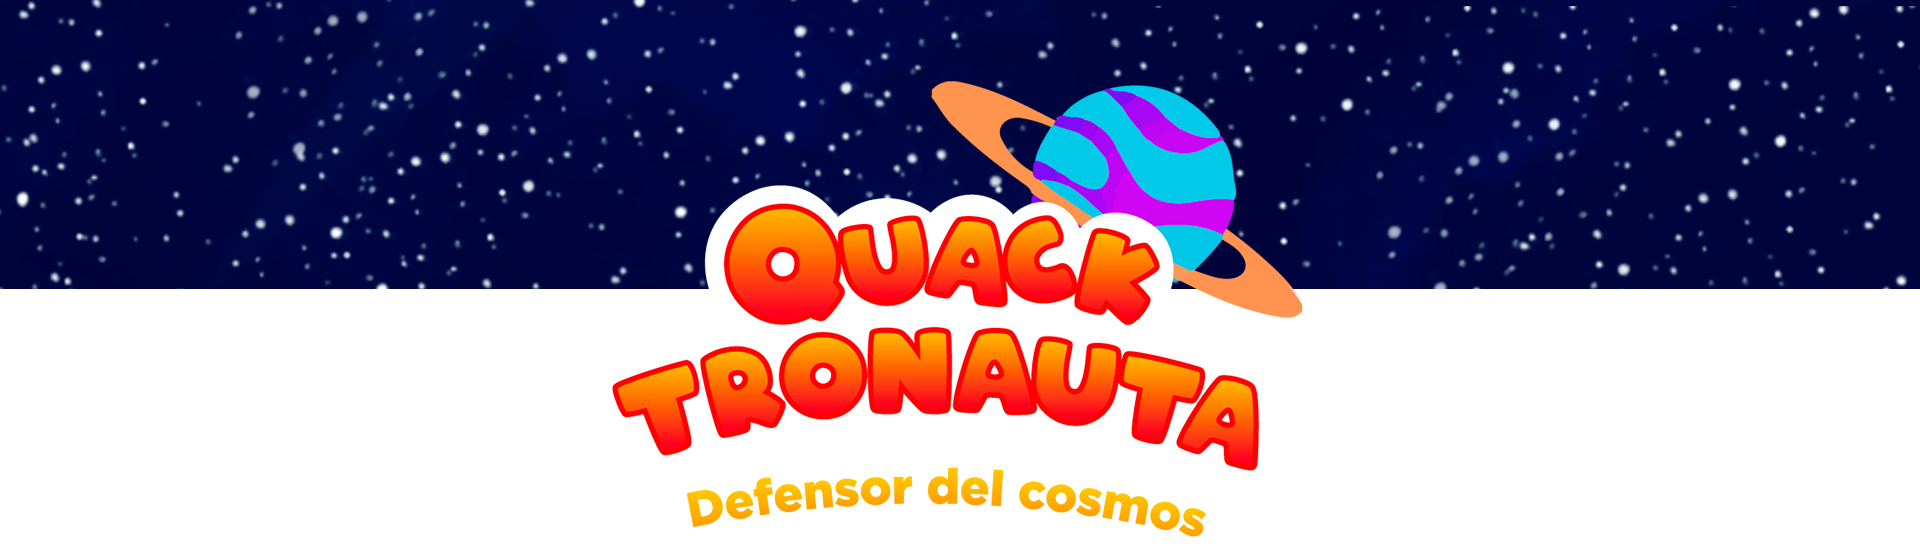 "Quacktronauta: Defensor del cosmos"